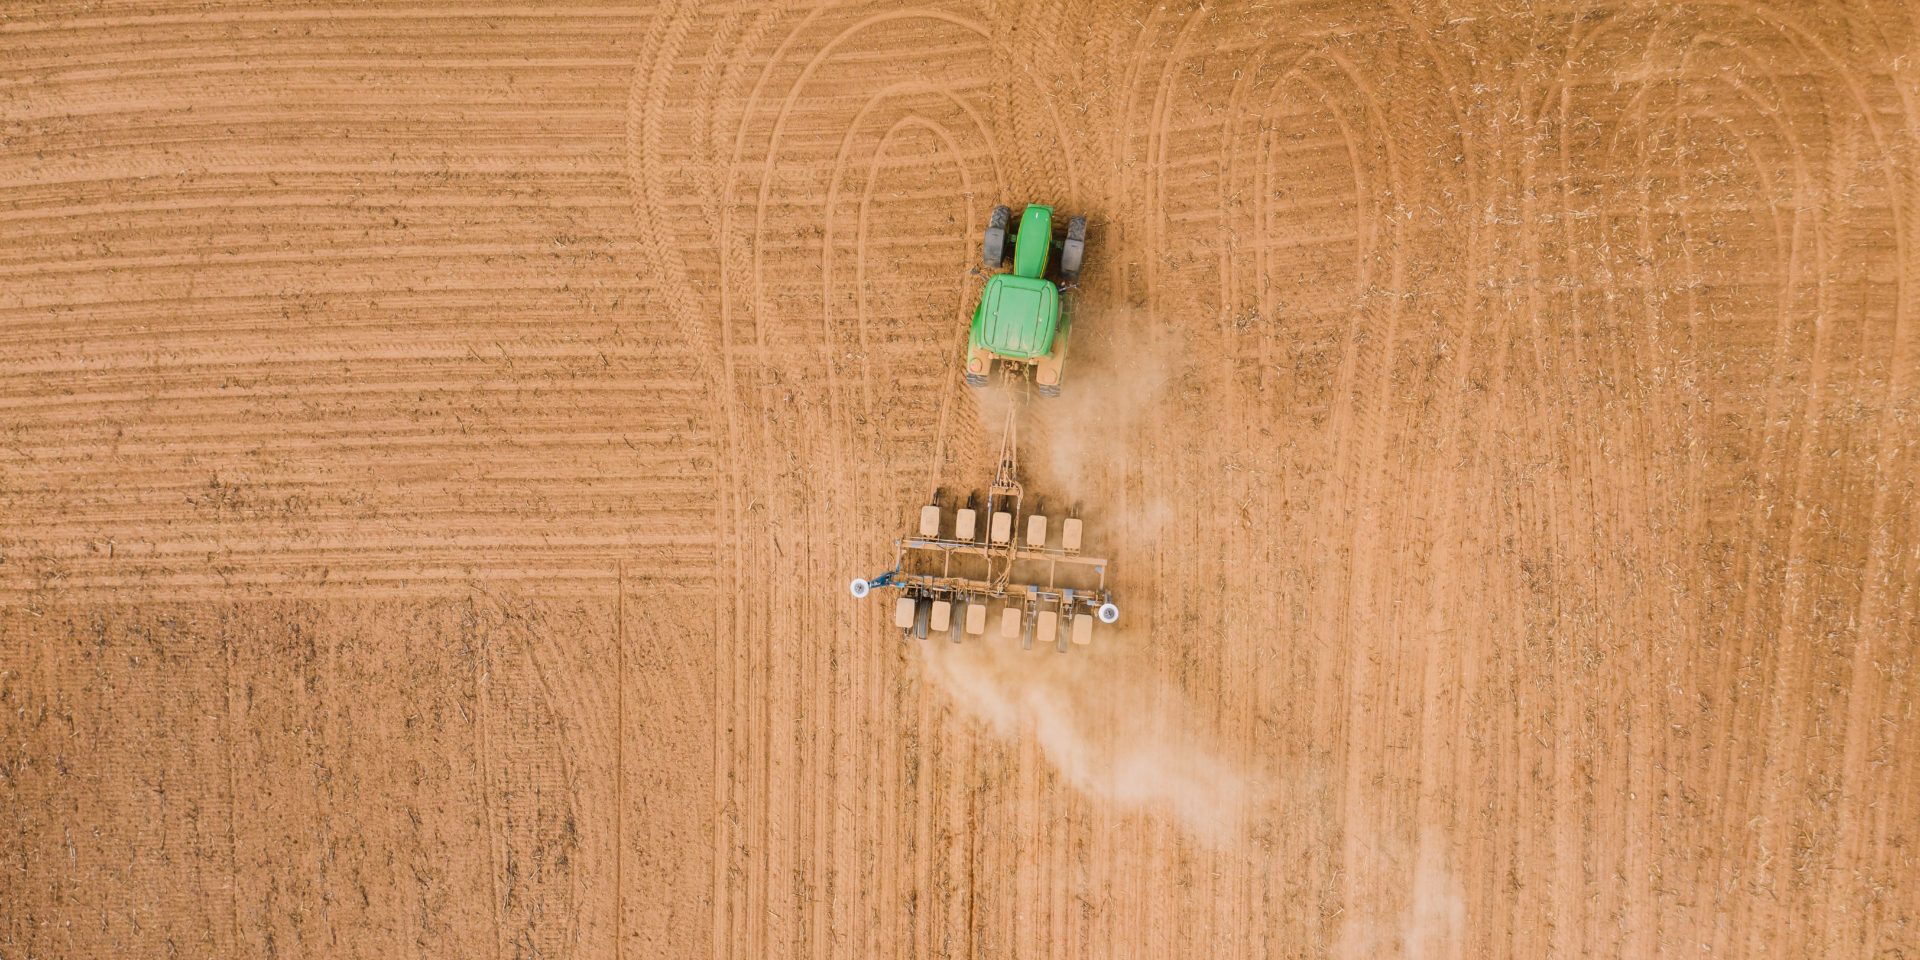 Imagen de un tractor arando un campo